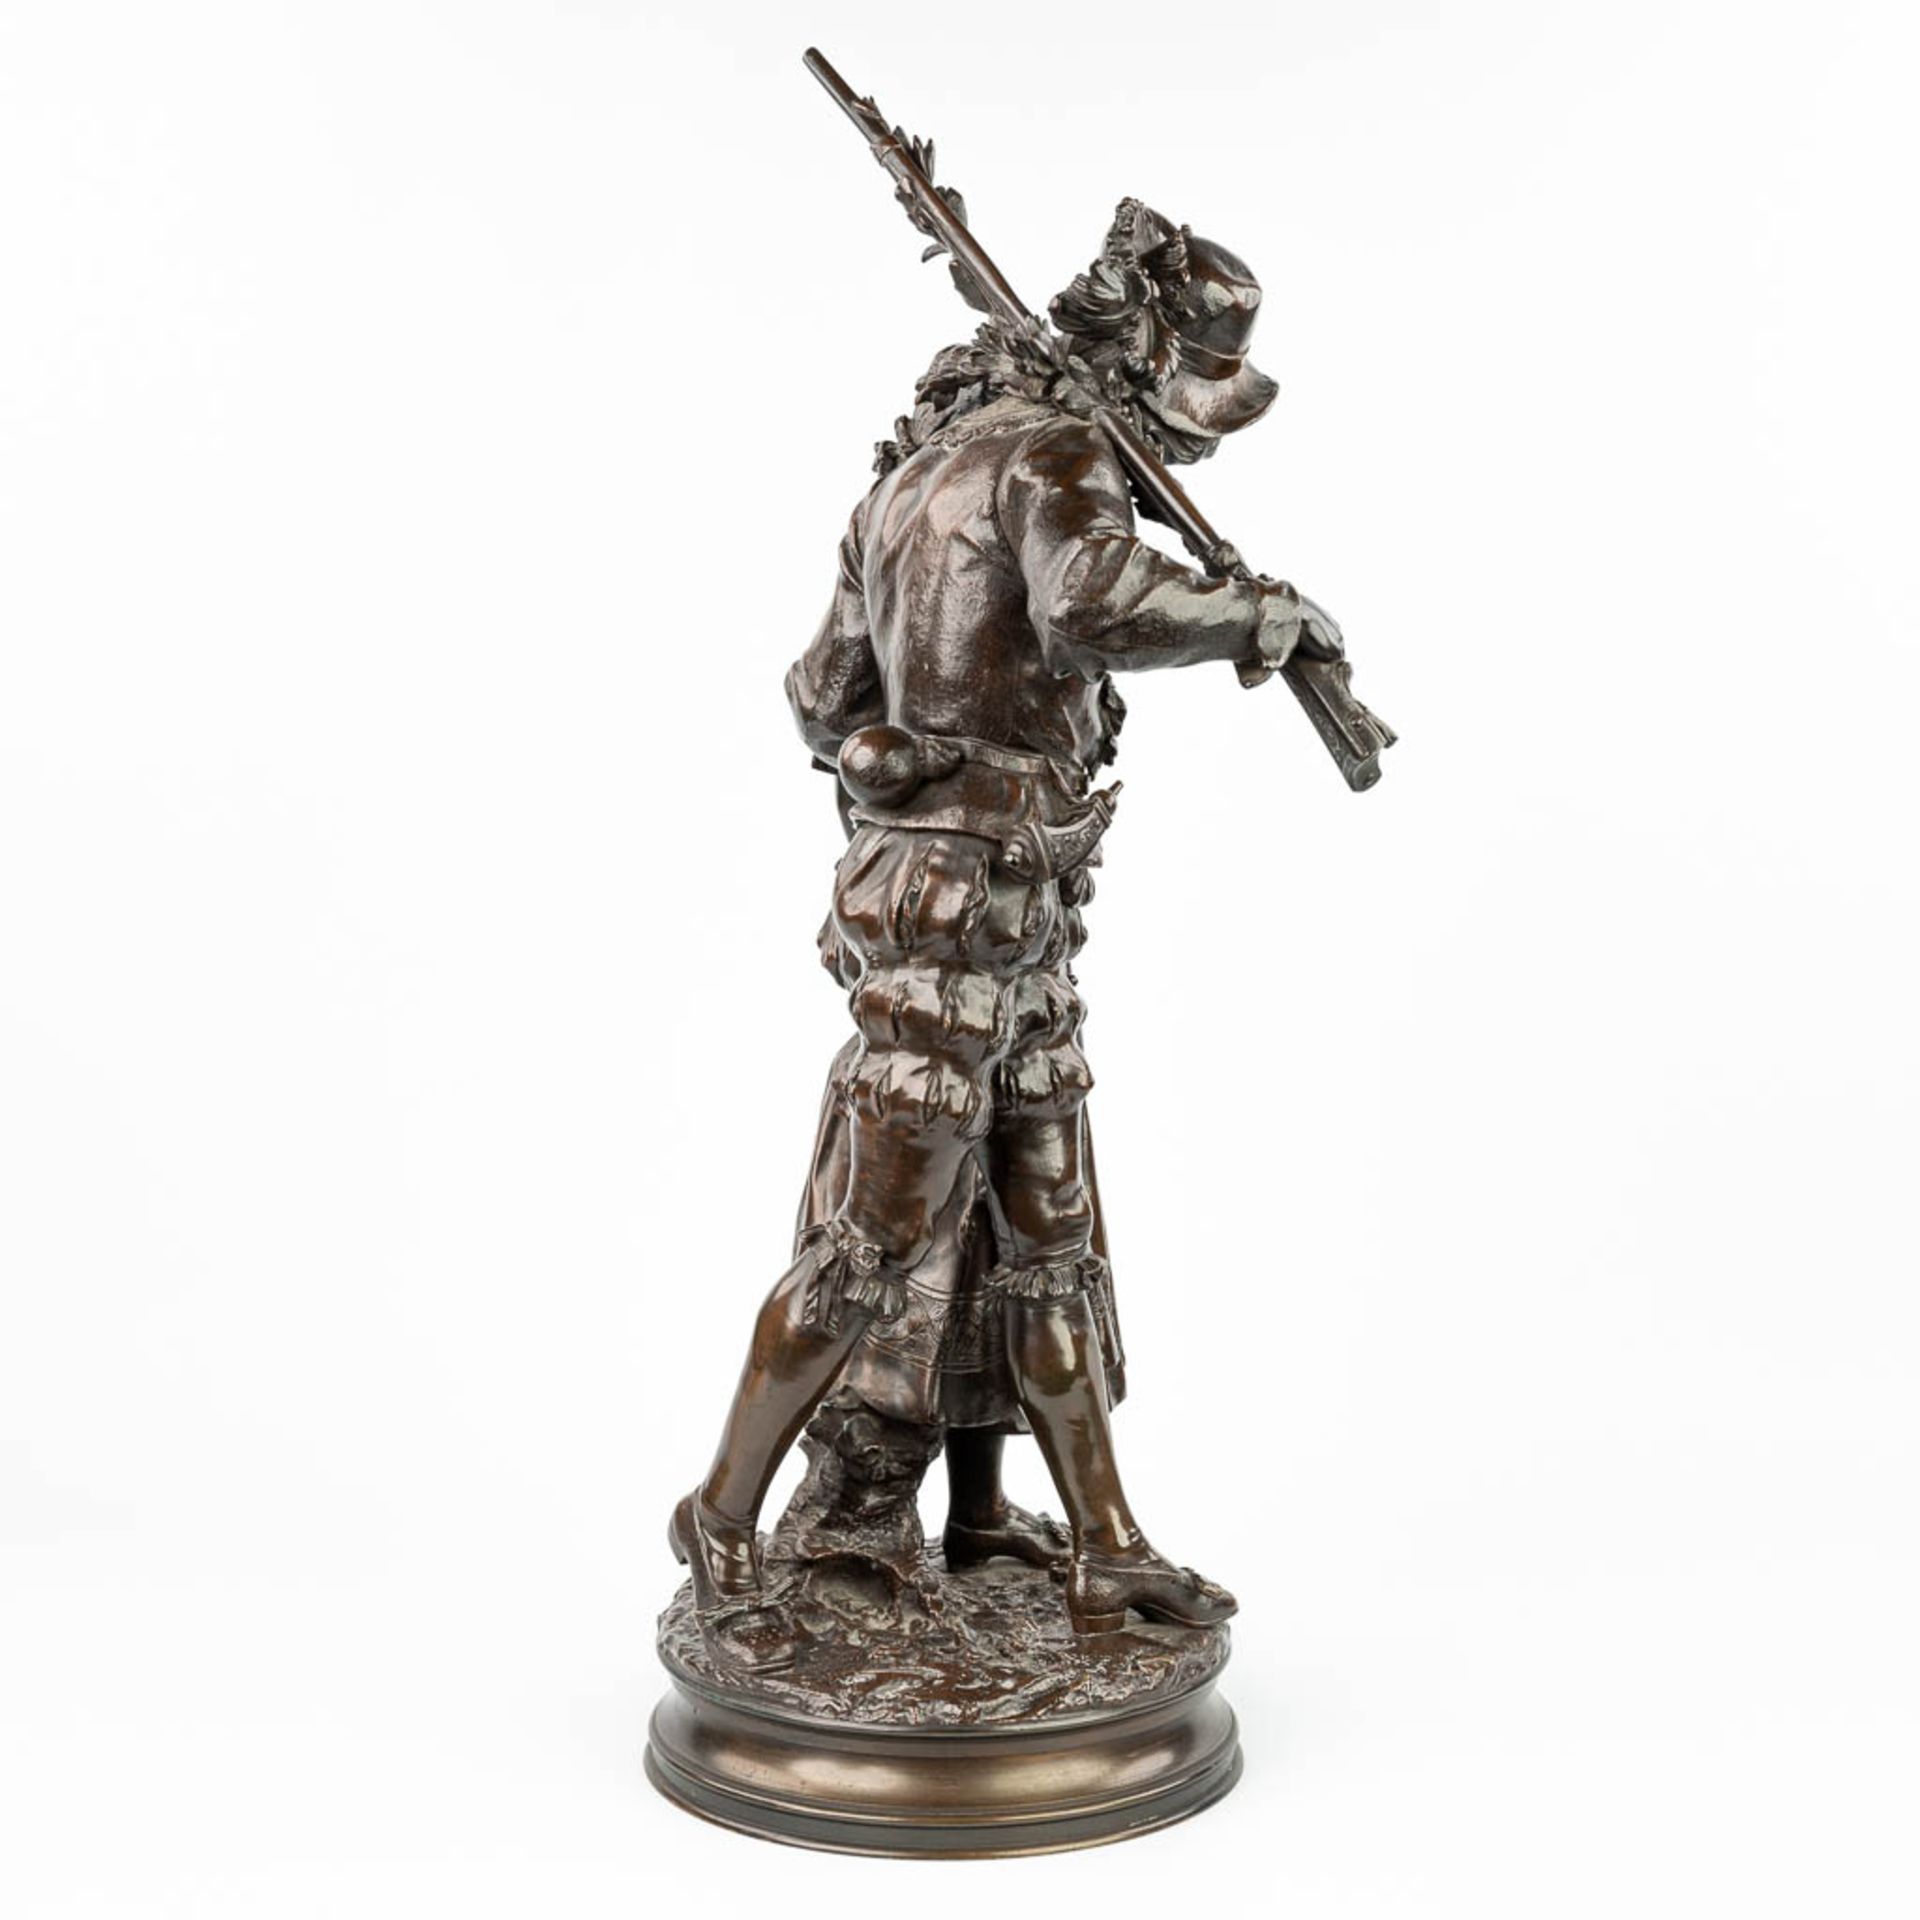 Adrien Etienne GAUDEZ (1845-1902) 'Retour de Chasse' a bronze statue on a revolving base. (H:72cm) - Image 3 of 15